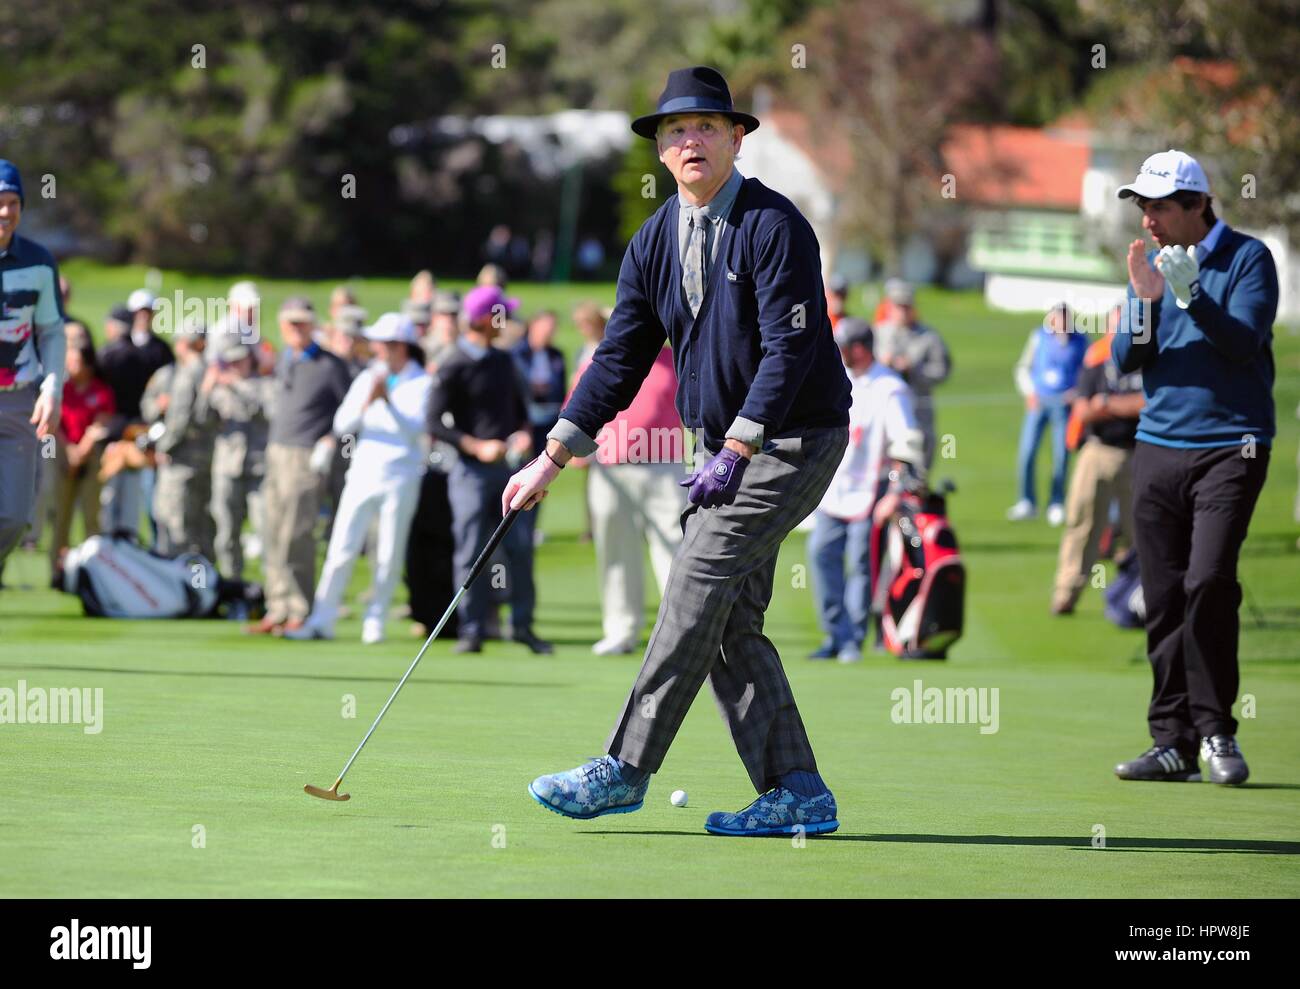 Attore e comico Bill Murray indossando un abbinamento blu navy maglione e hat guarda il suo putt durante l'AT&T Pebble Beach National Pro-Am golf tournament Febbraio 11, 2015 a Monterey in California. Foto Stock